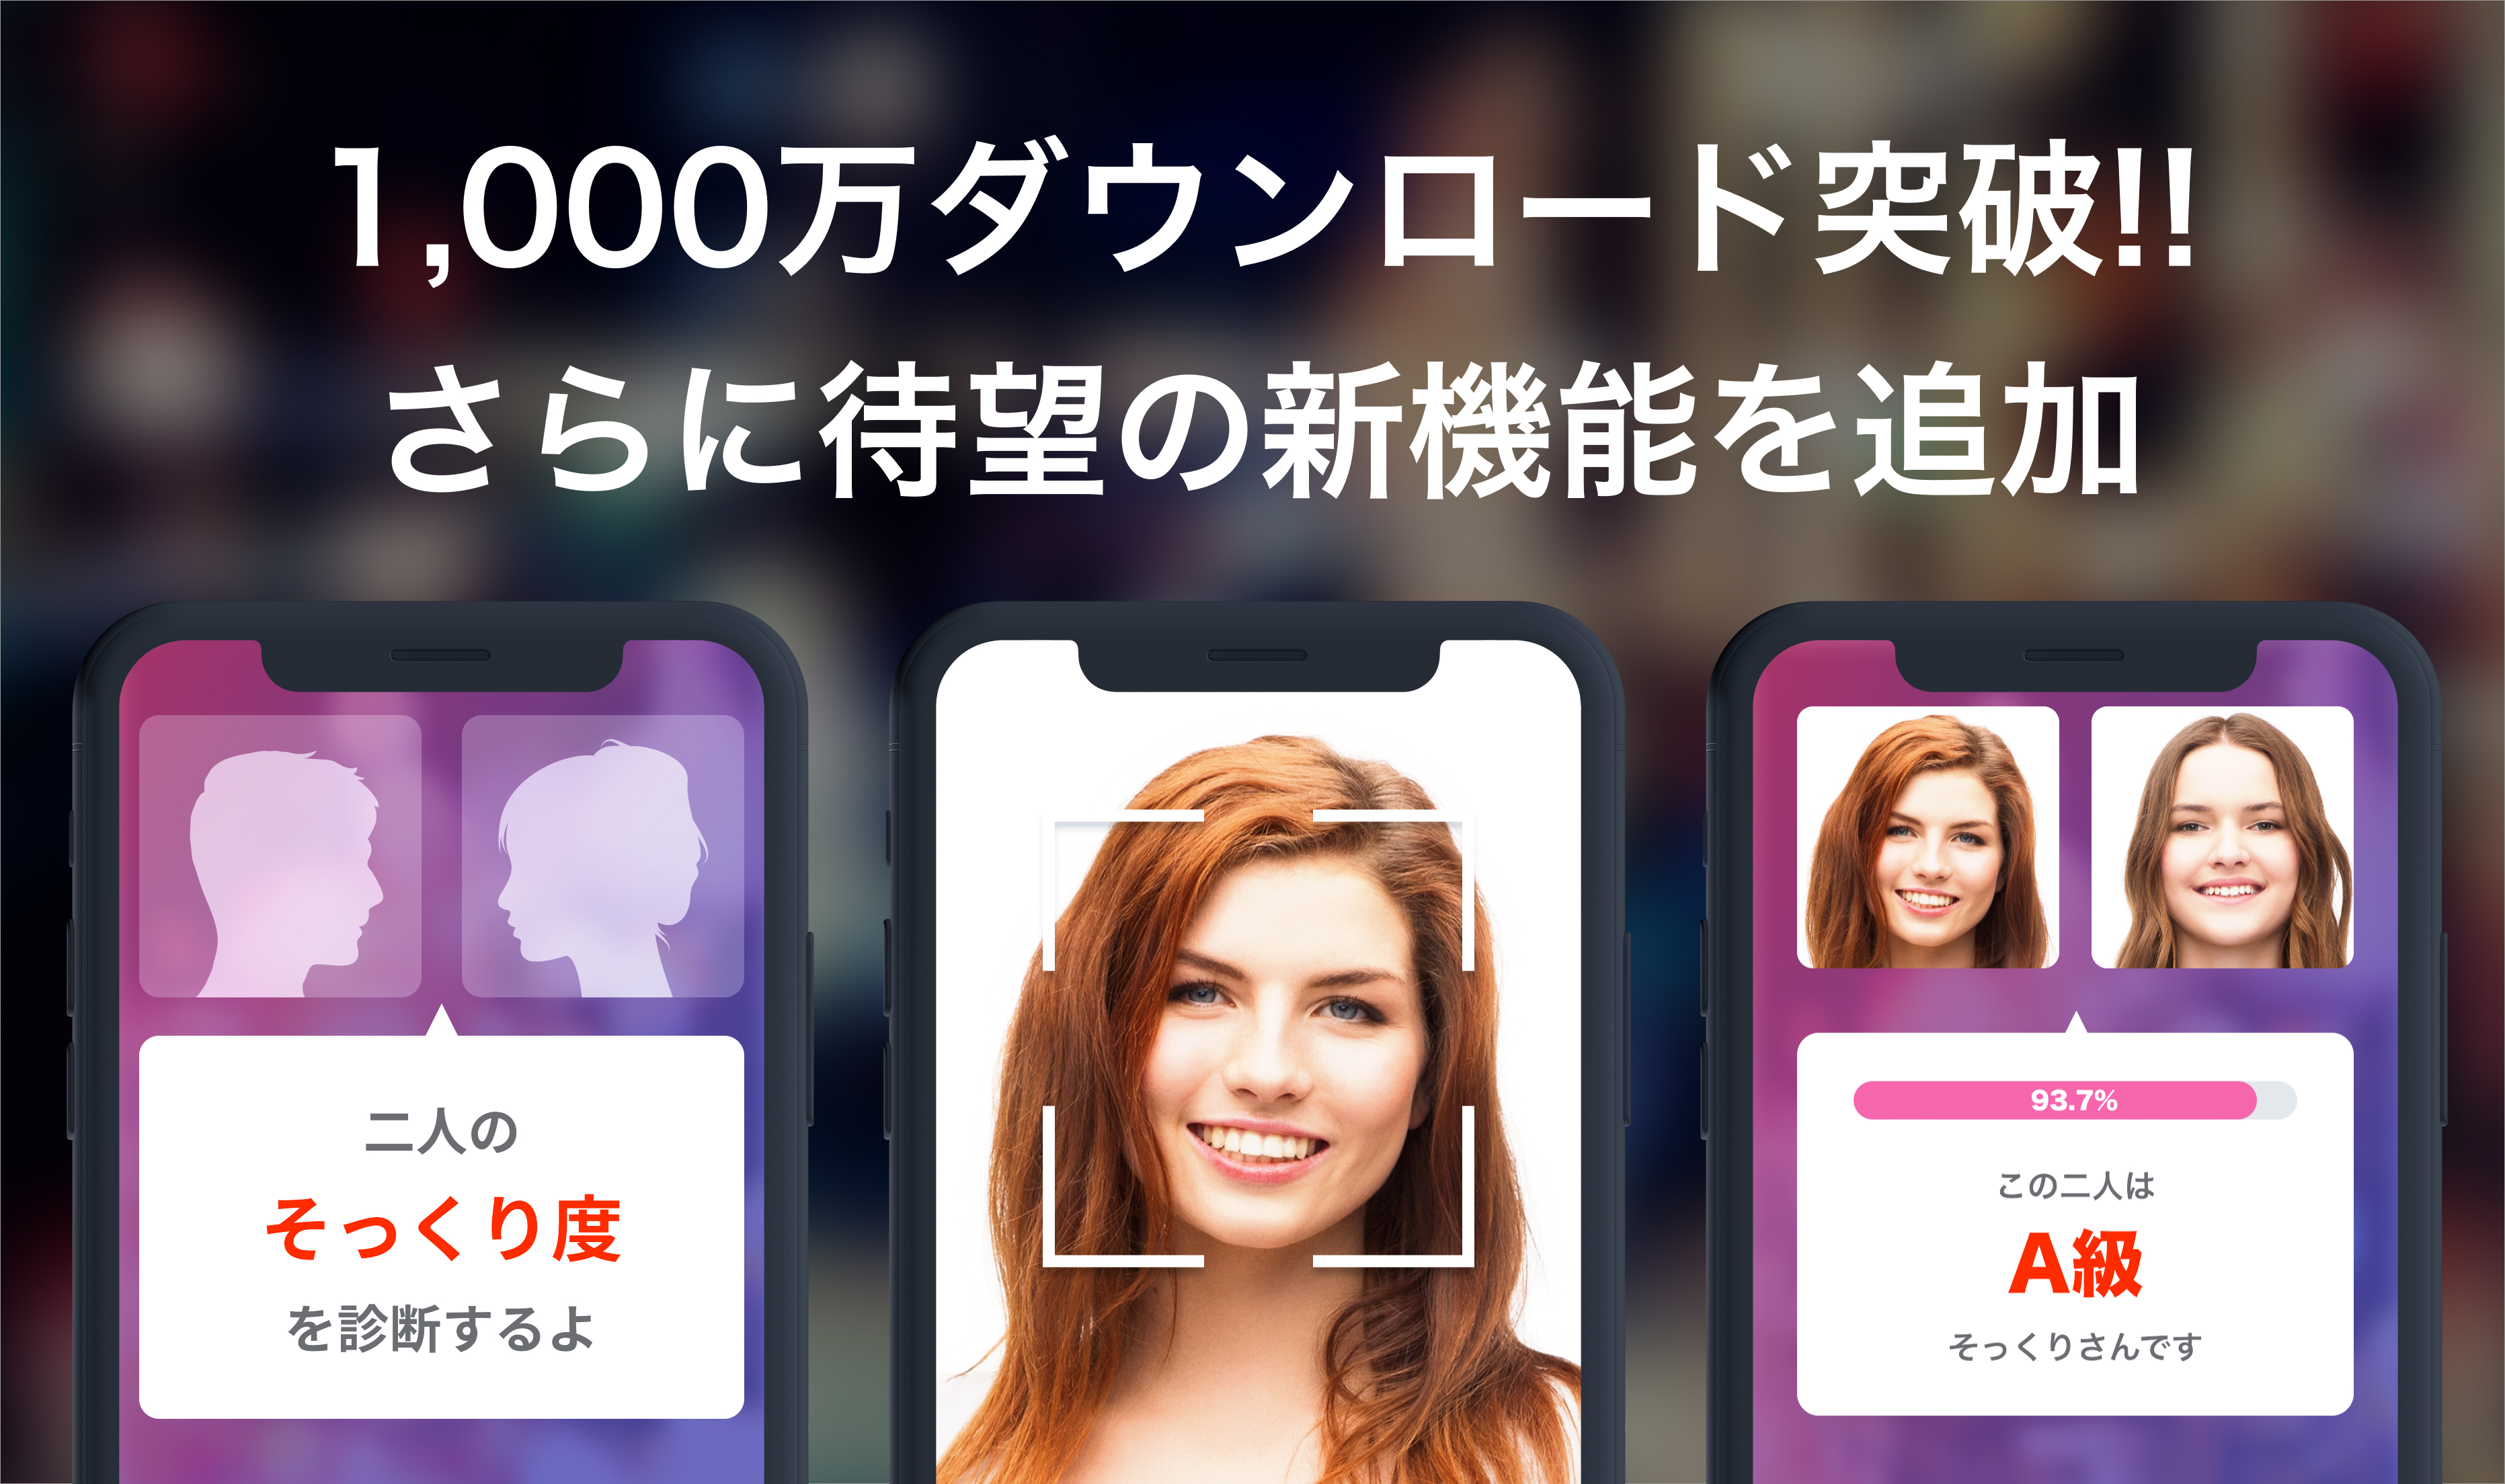 Ai 顔診断アプリ そっくりさん が1 000万ダウンロードを突破 さらに新機能を配信開始 App Factory株式会社のプレスリリース